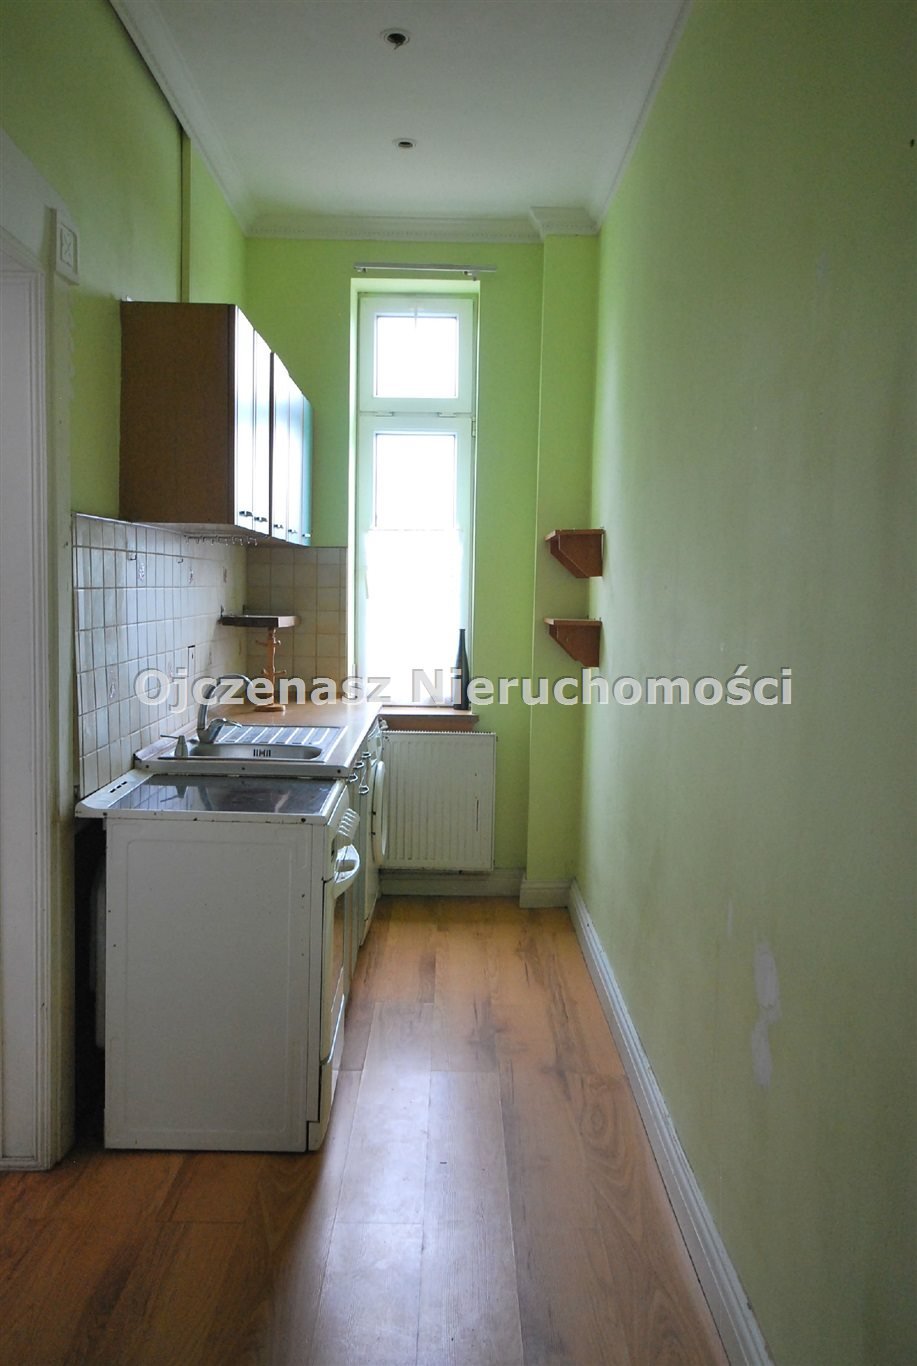 Mieszkanie trzypokojowe na sprzedaż Solec Kujawski  79m2 Foto 9